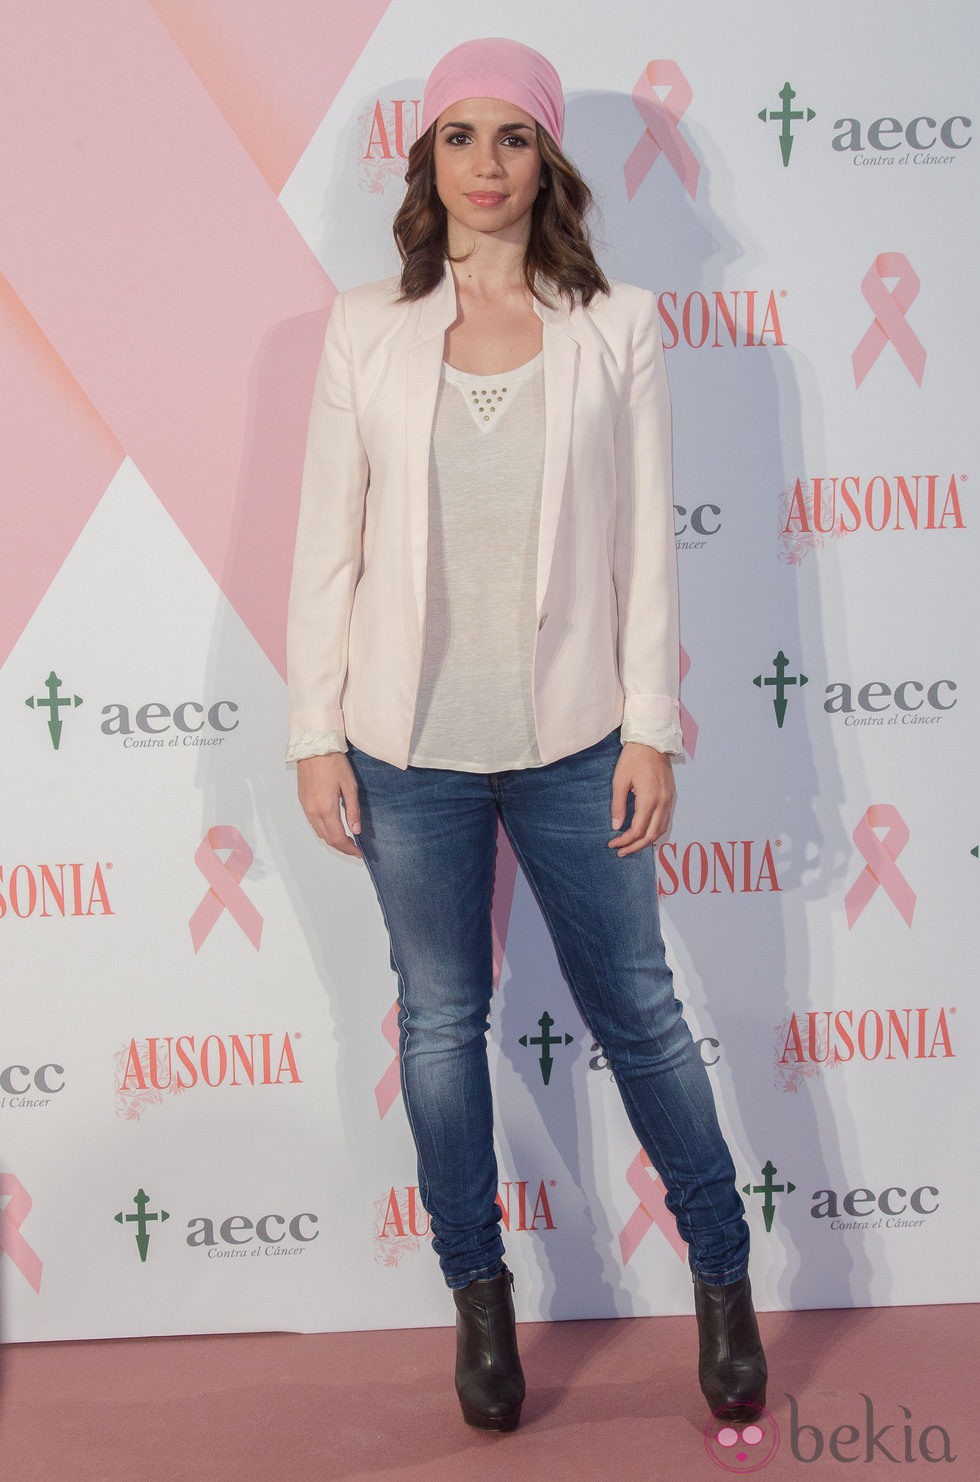 Elena Furiase en la campaña de lucha contra el cáncer de mama 2014